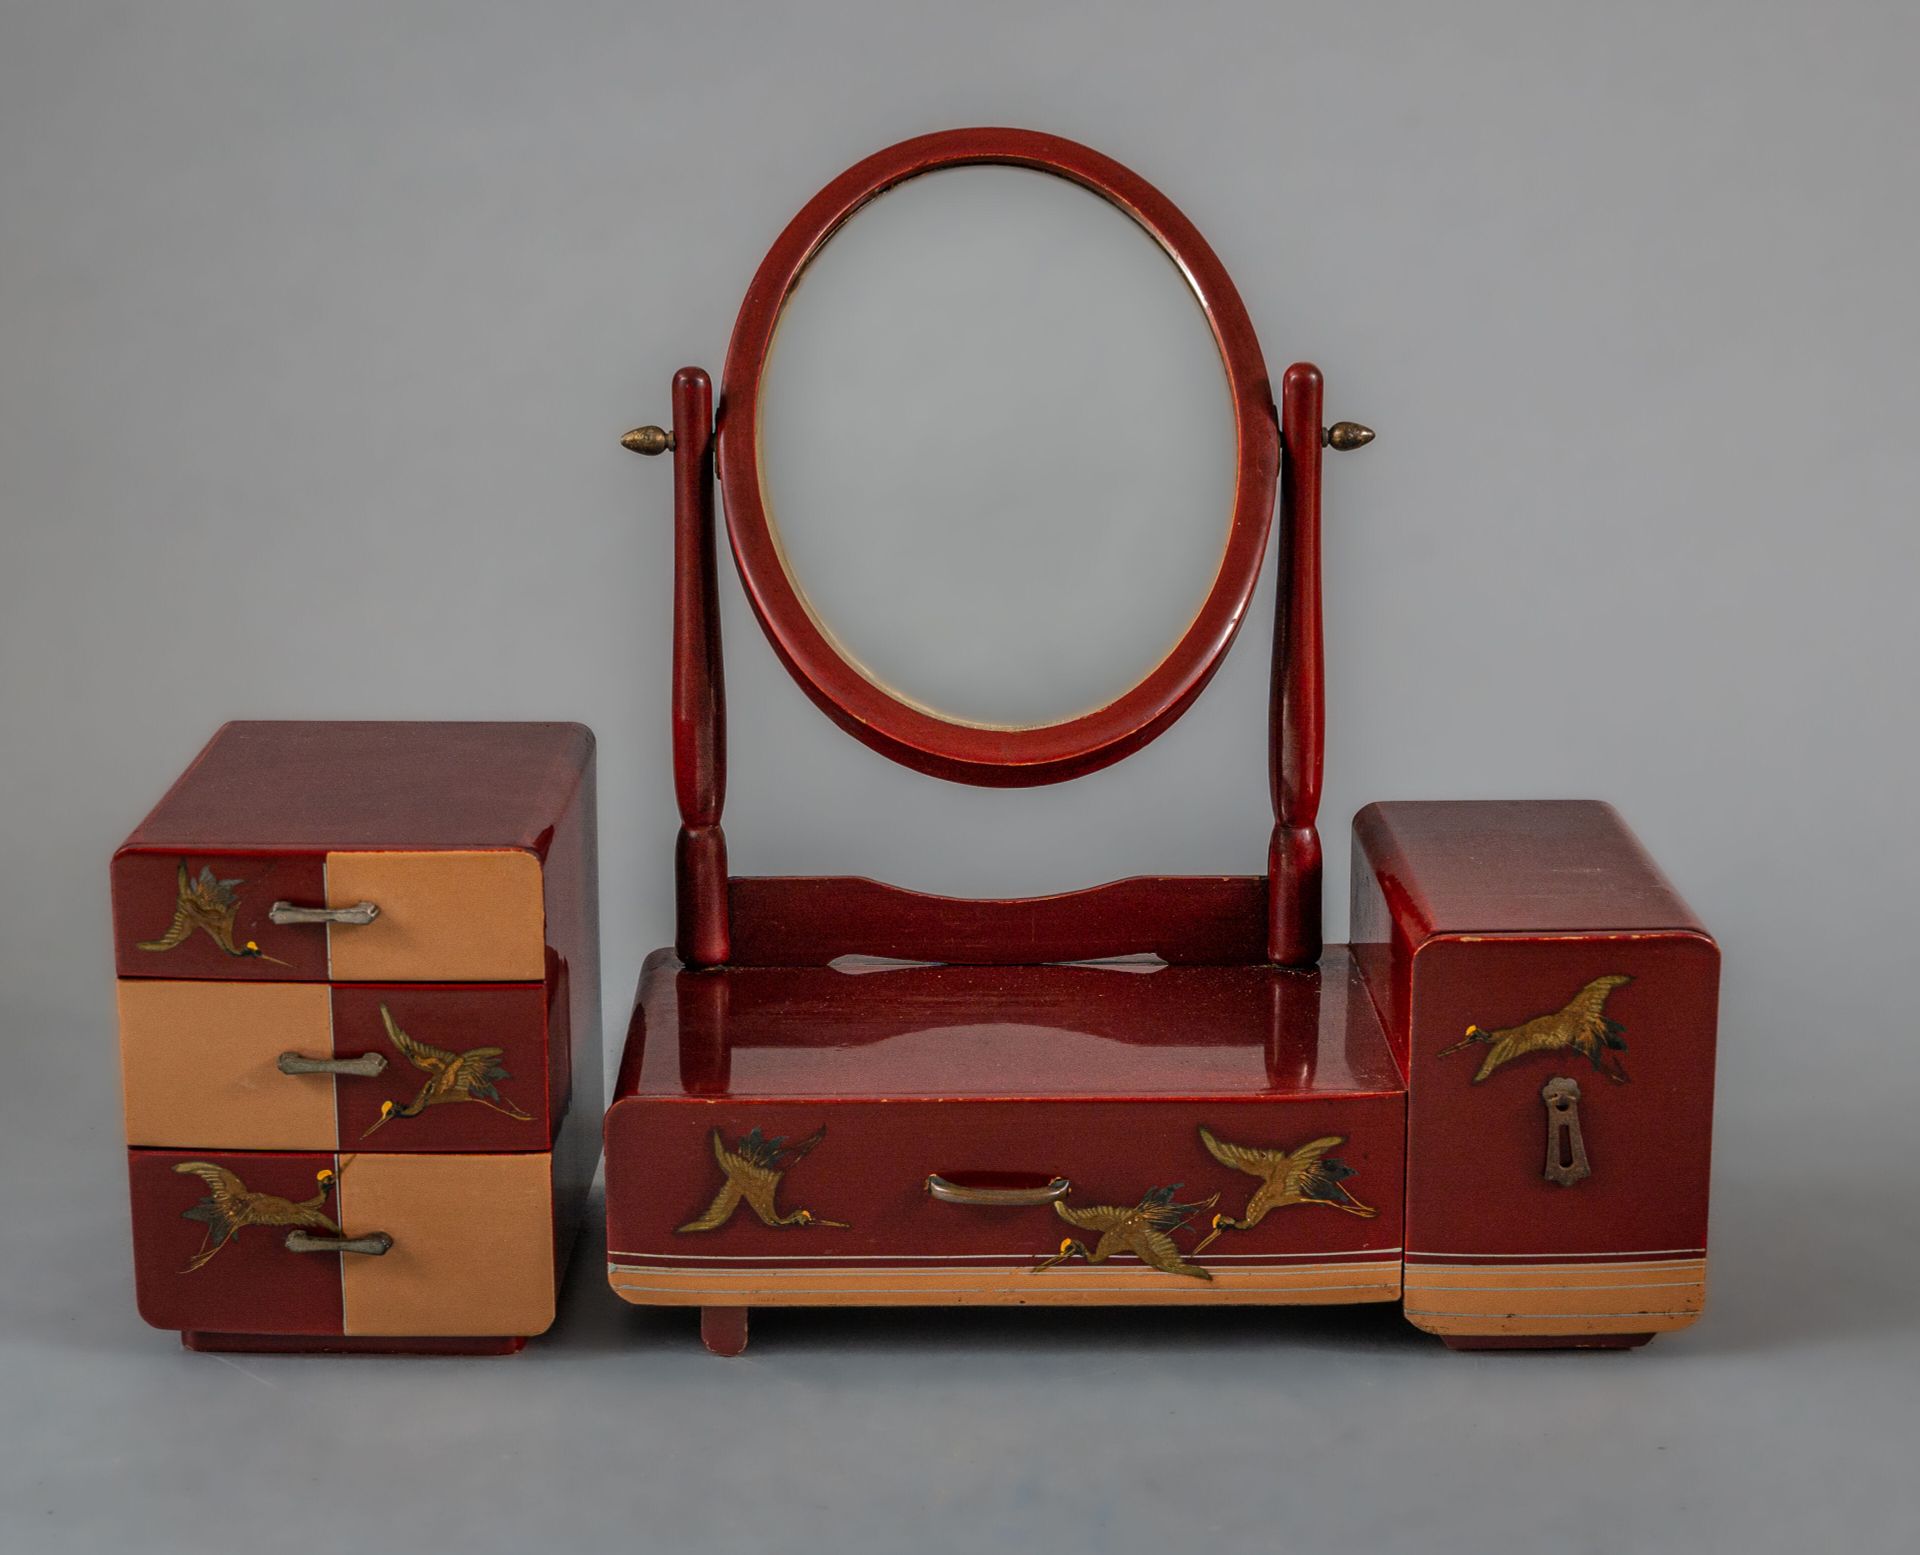 Null 漆器马桶组，日本，20 世纪上半叶
包括梳妆台、抽屉上方的椭圆形镜子、侧面的另一个抽屉以及一个带三个抽屉的小柜子，均为酒红色和橙红色漆器，饰有金色和黑&hellip;